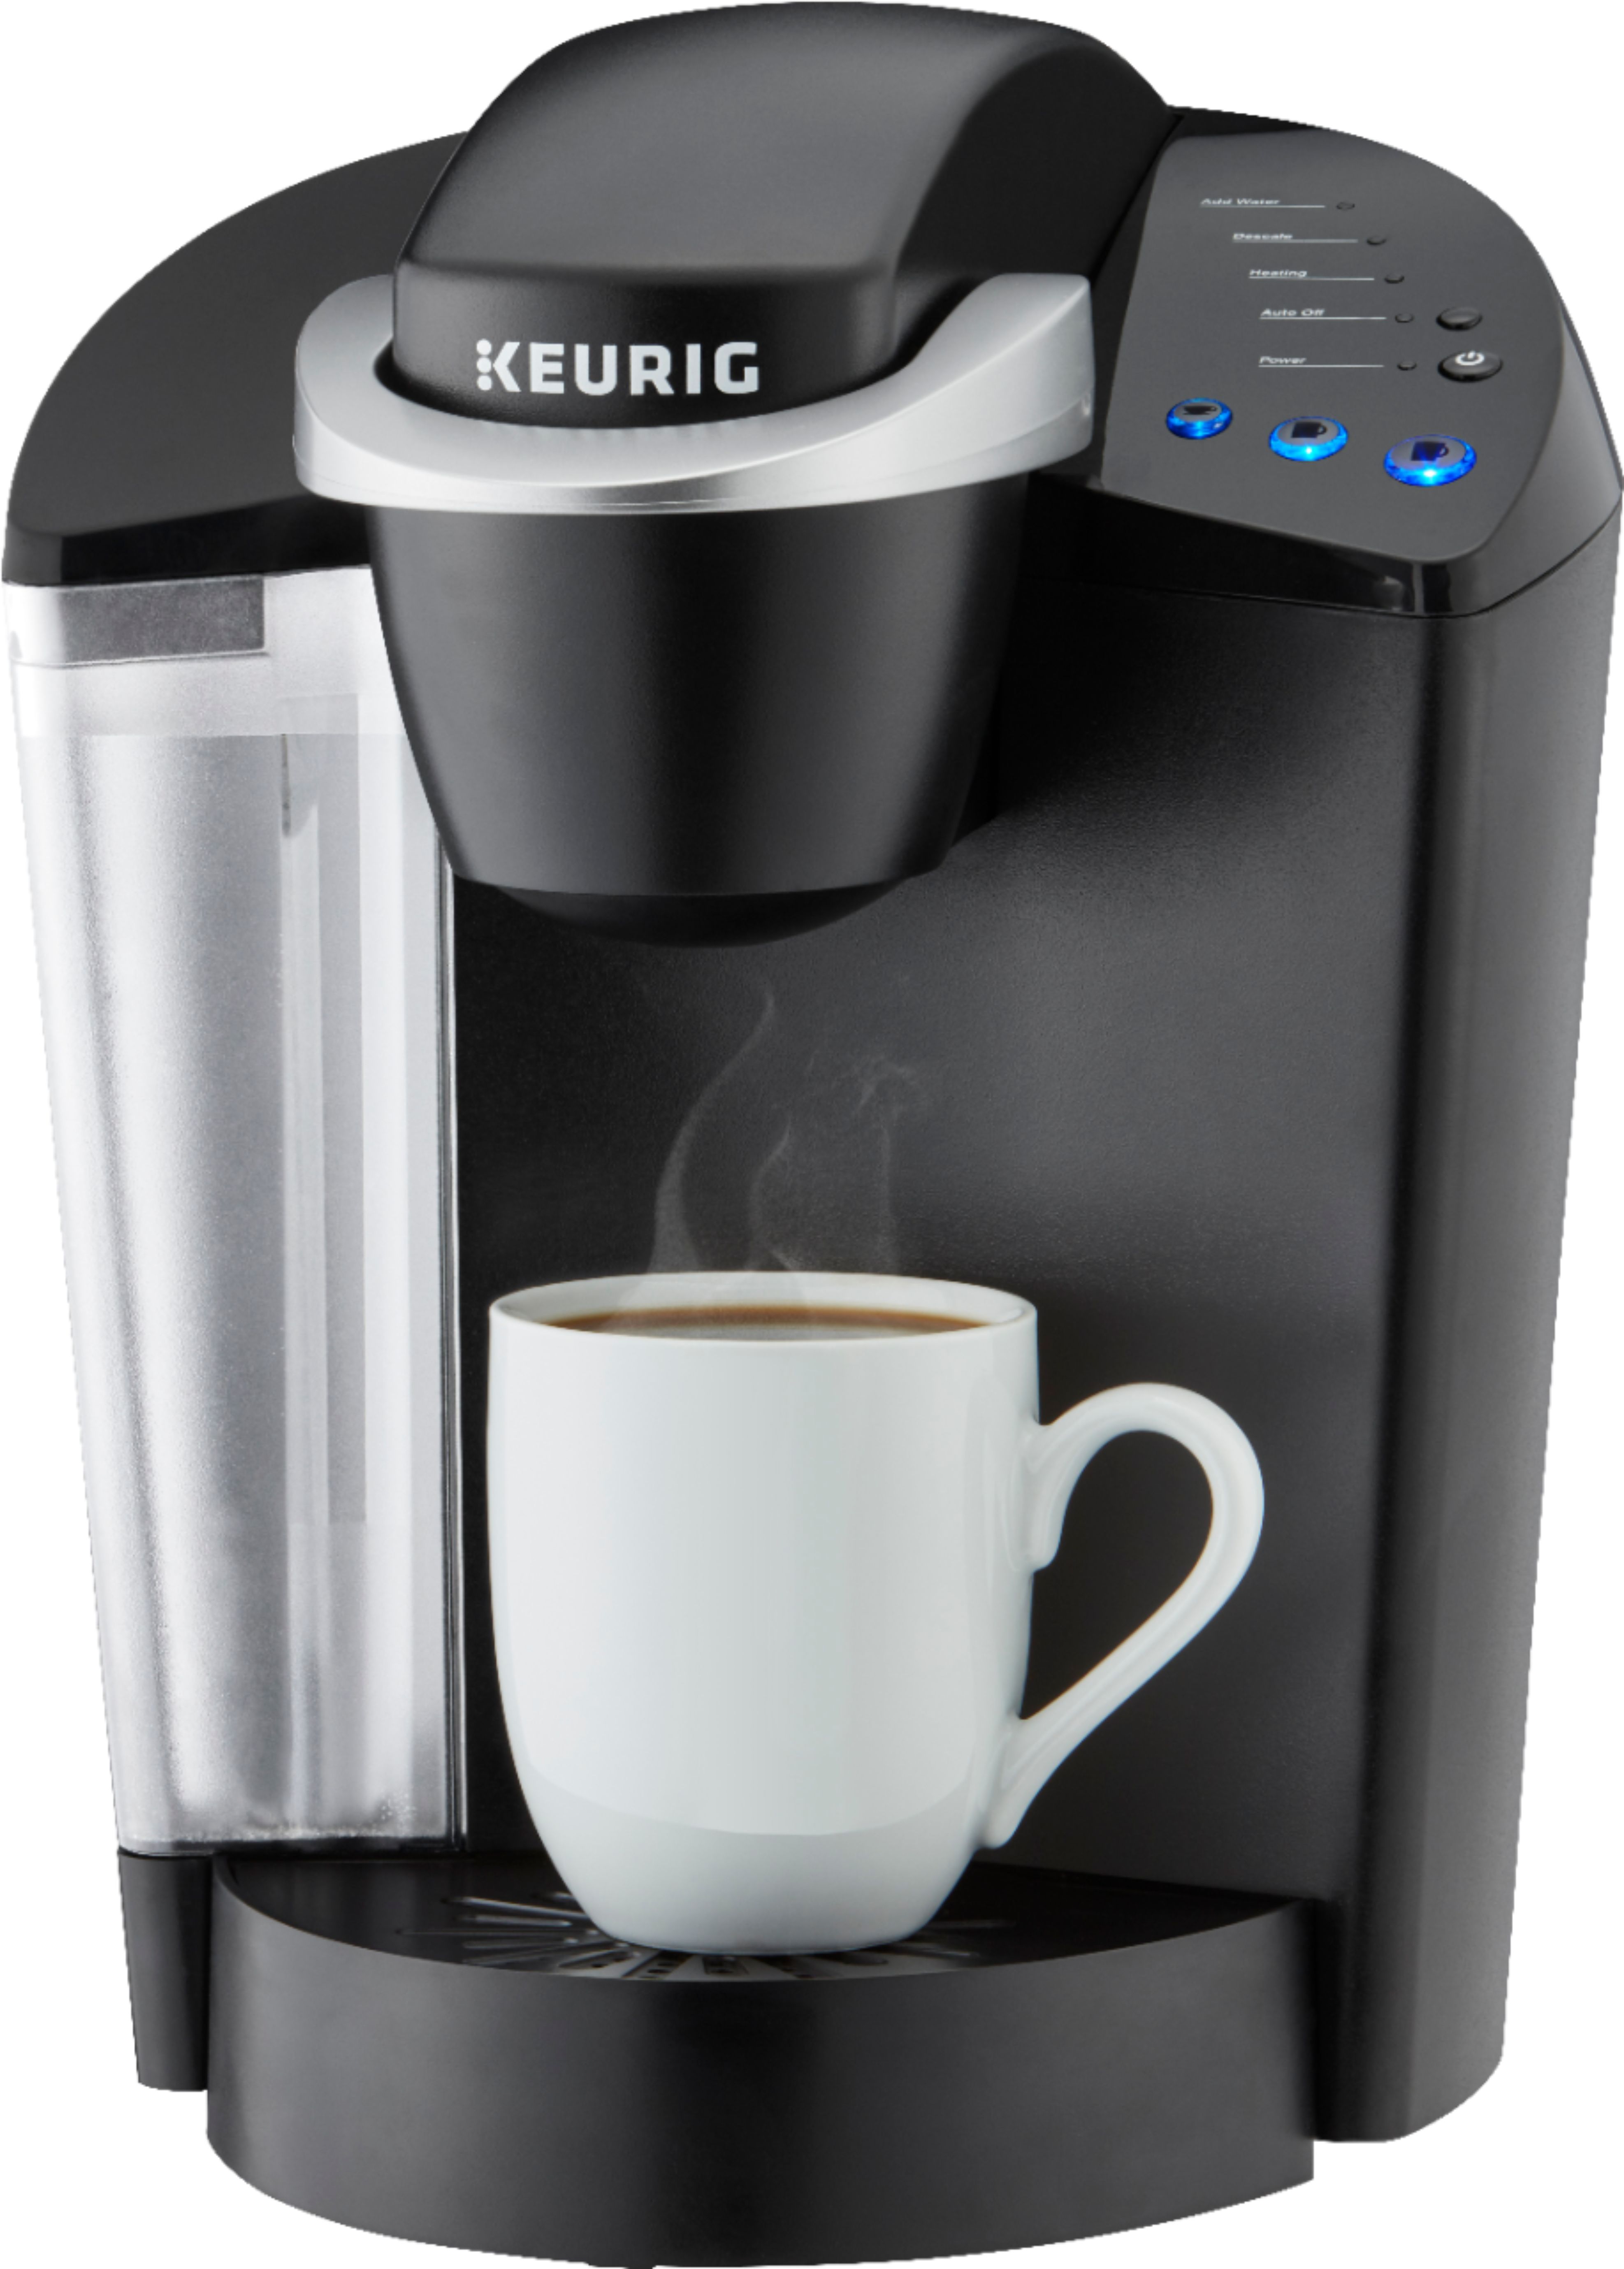 Keurig K-Cafe 4-Cup Coffee Maker Black for sale online 